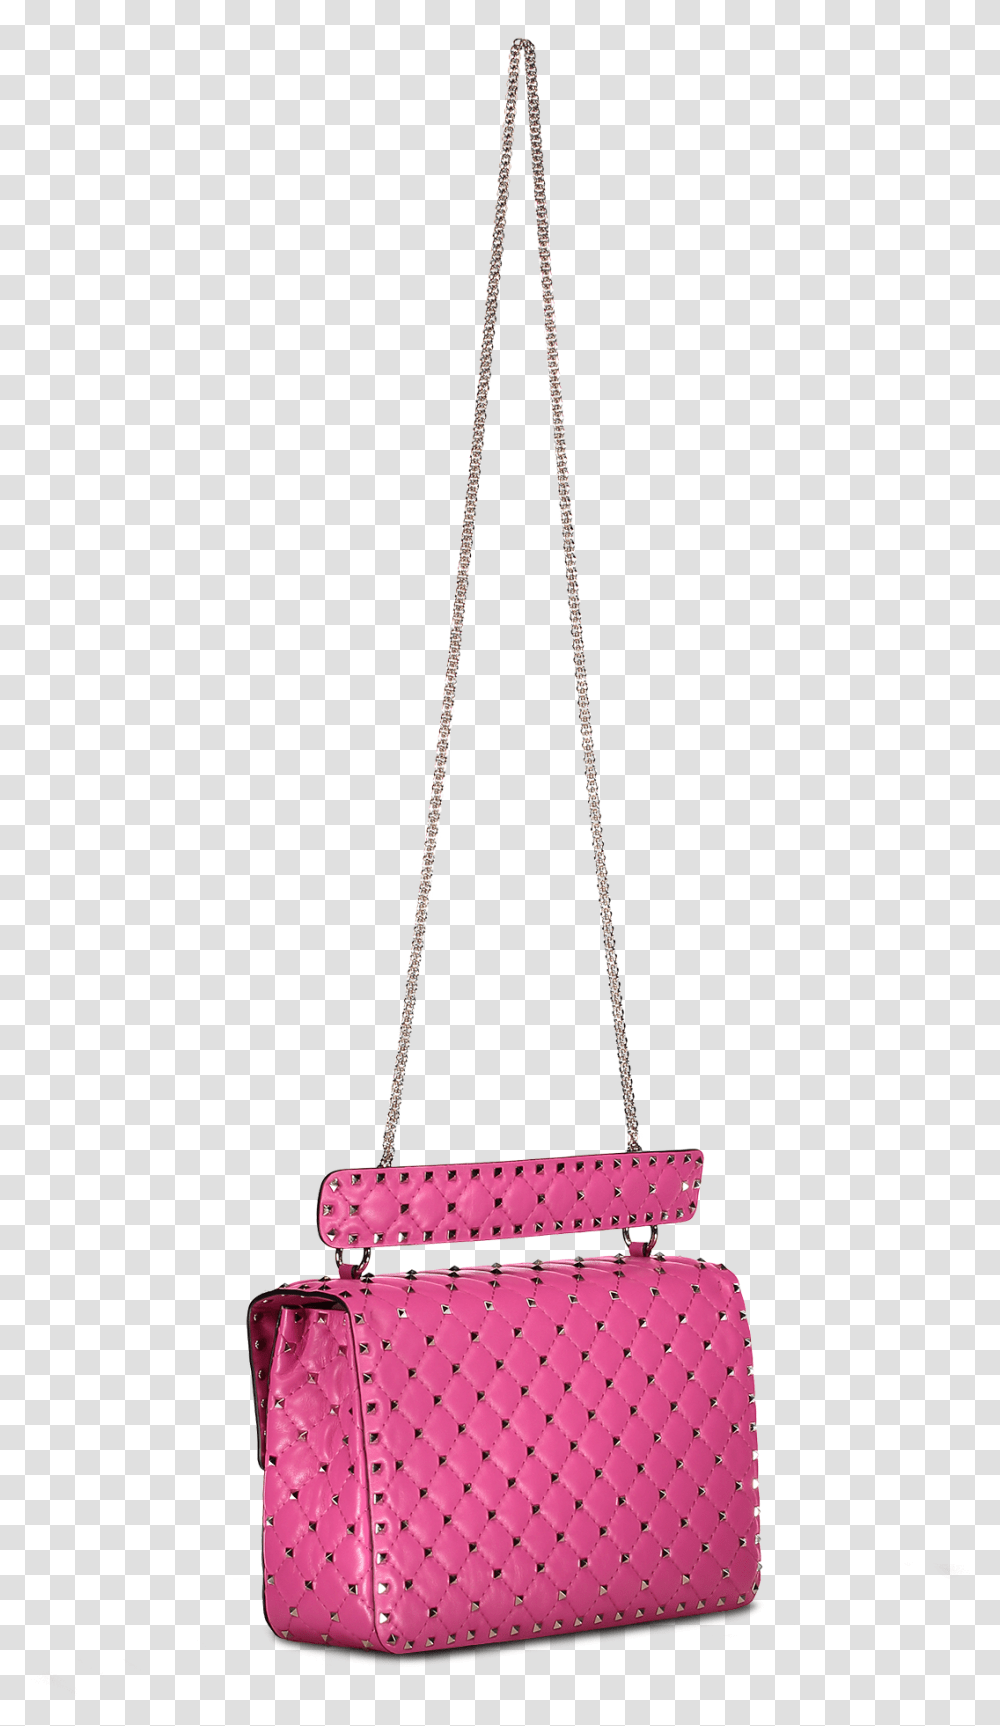 Rockstud Spike Large Shoulder Bag Pink Orchid, Handbag, Accessories, Accessory, Purse Transparent Png